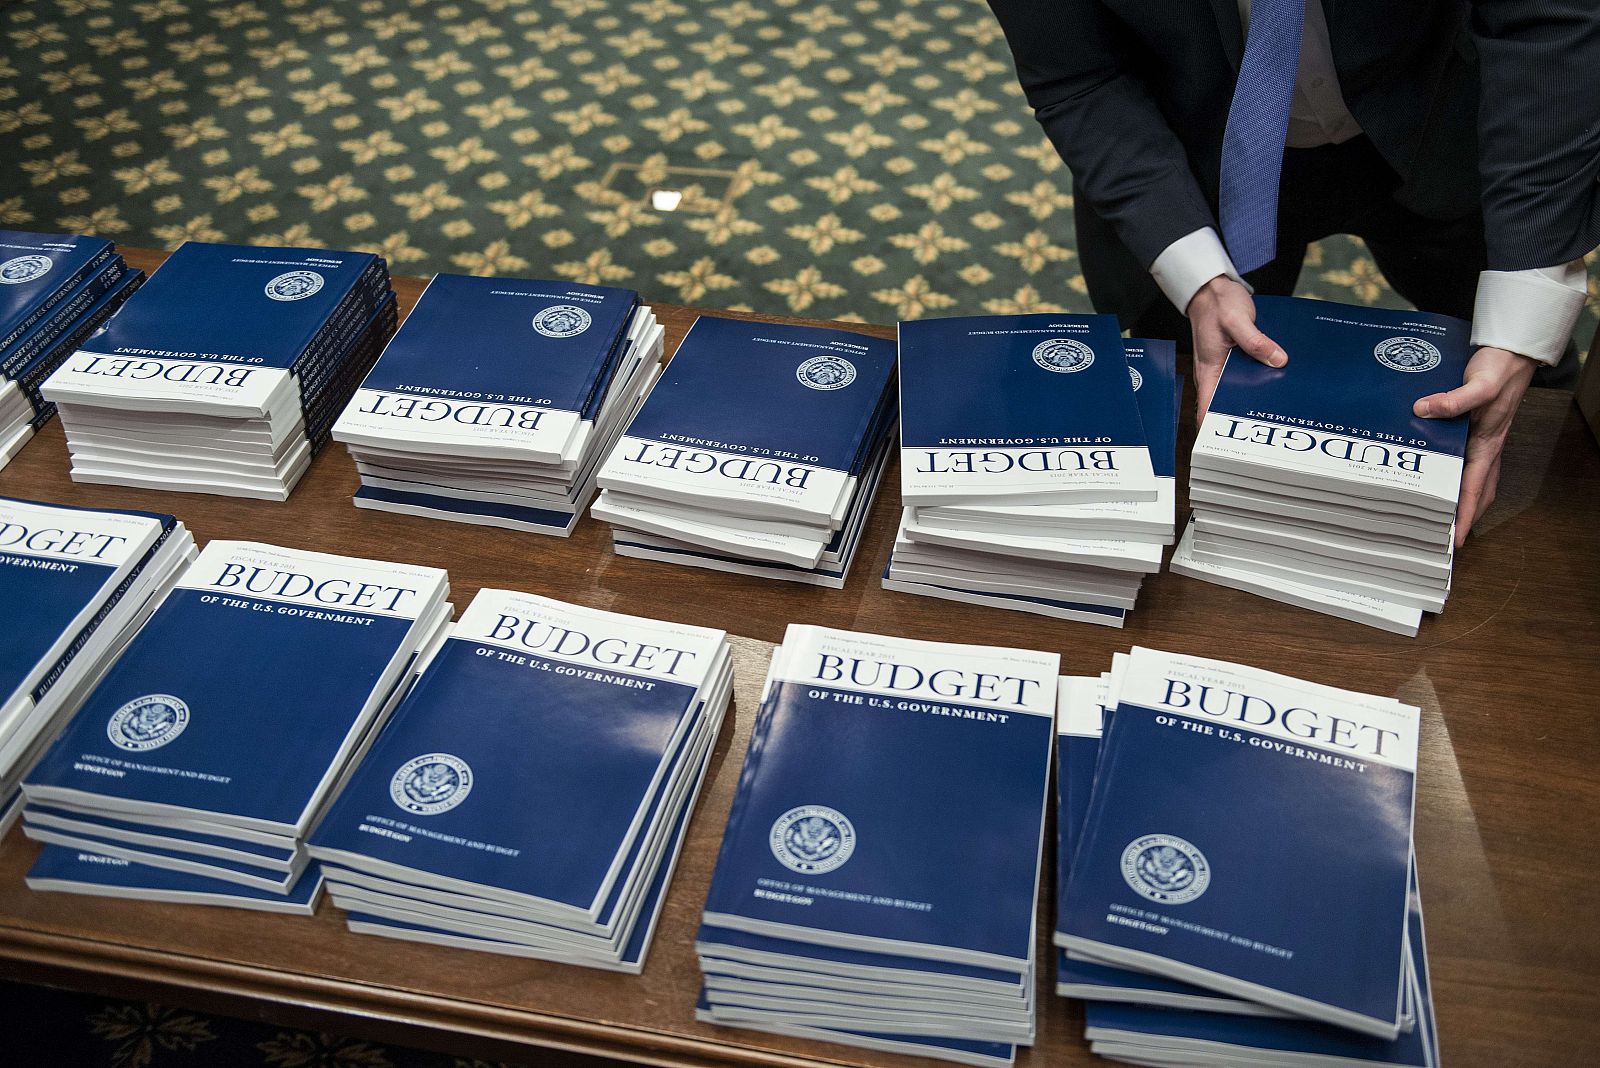 Copias de la propuesta de presupuesto para el año fiscal 2015 enviadas al Senado de EE.UU.